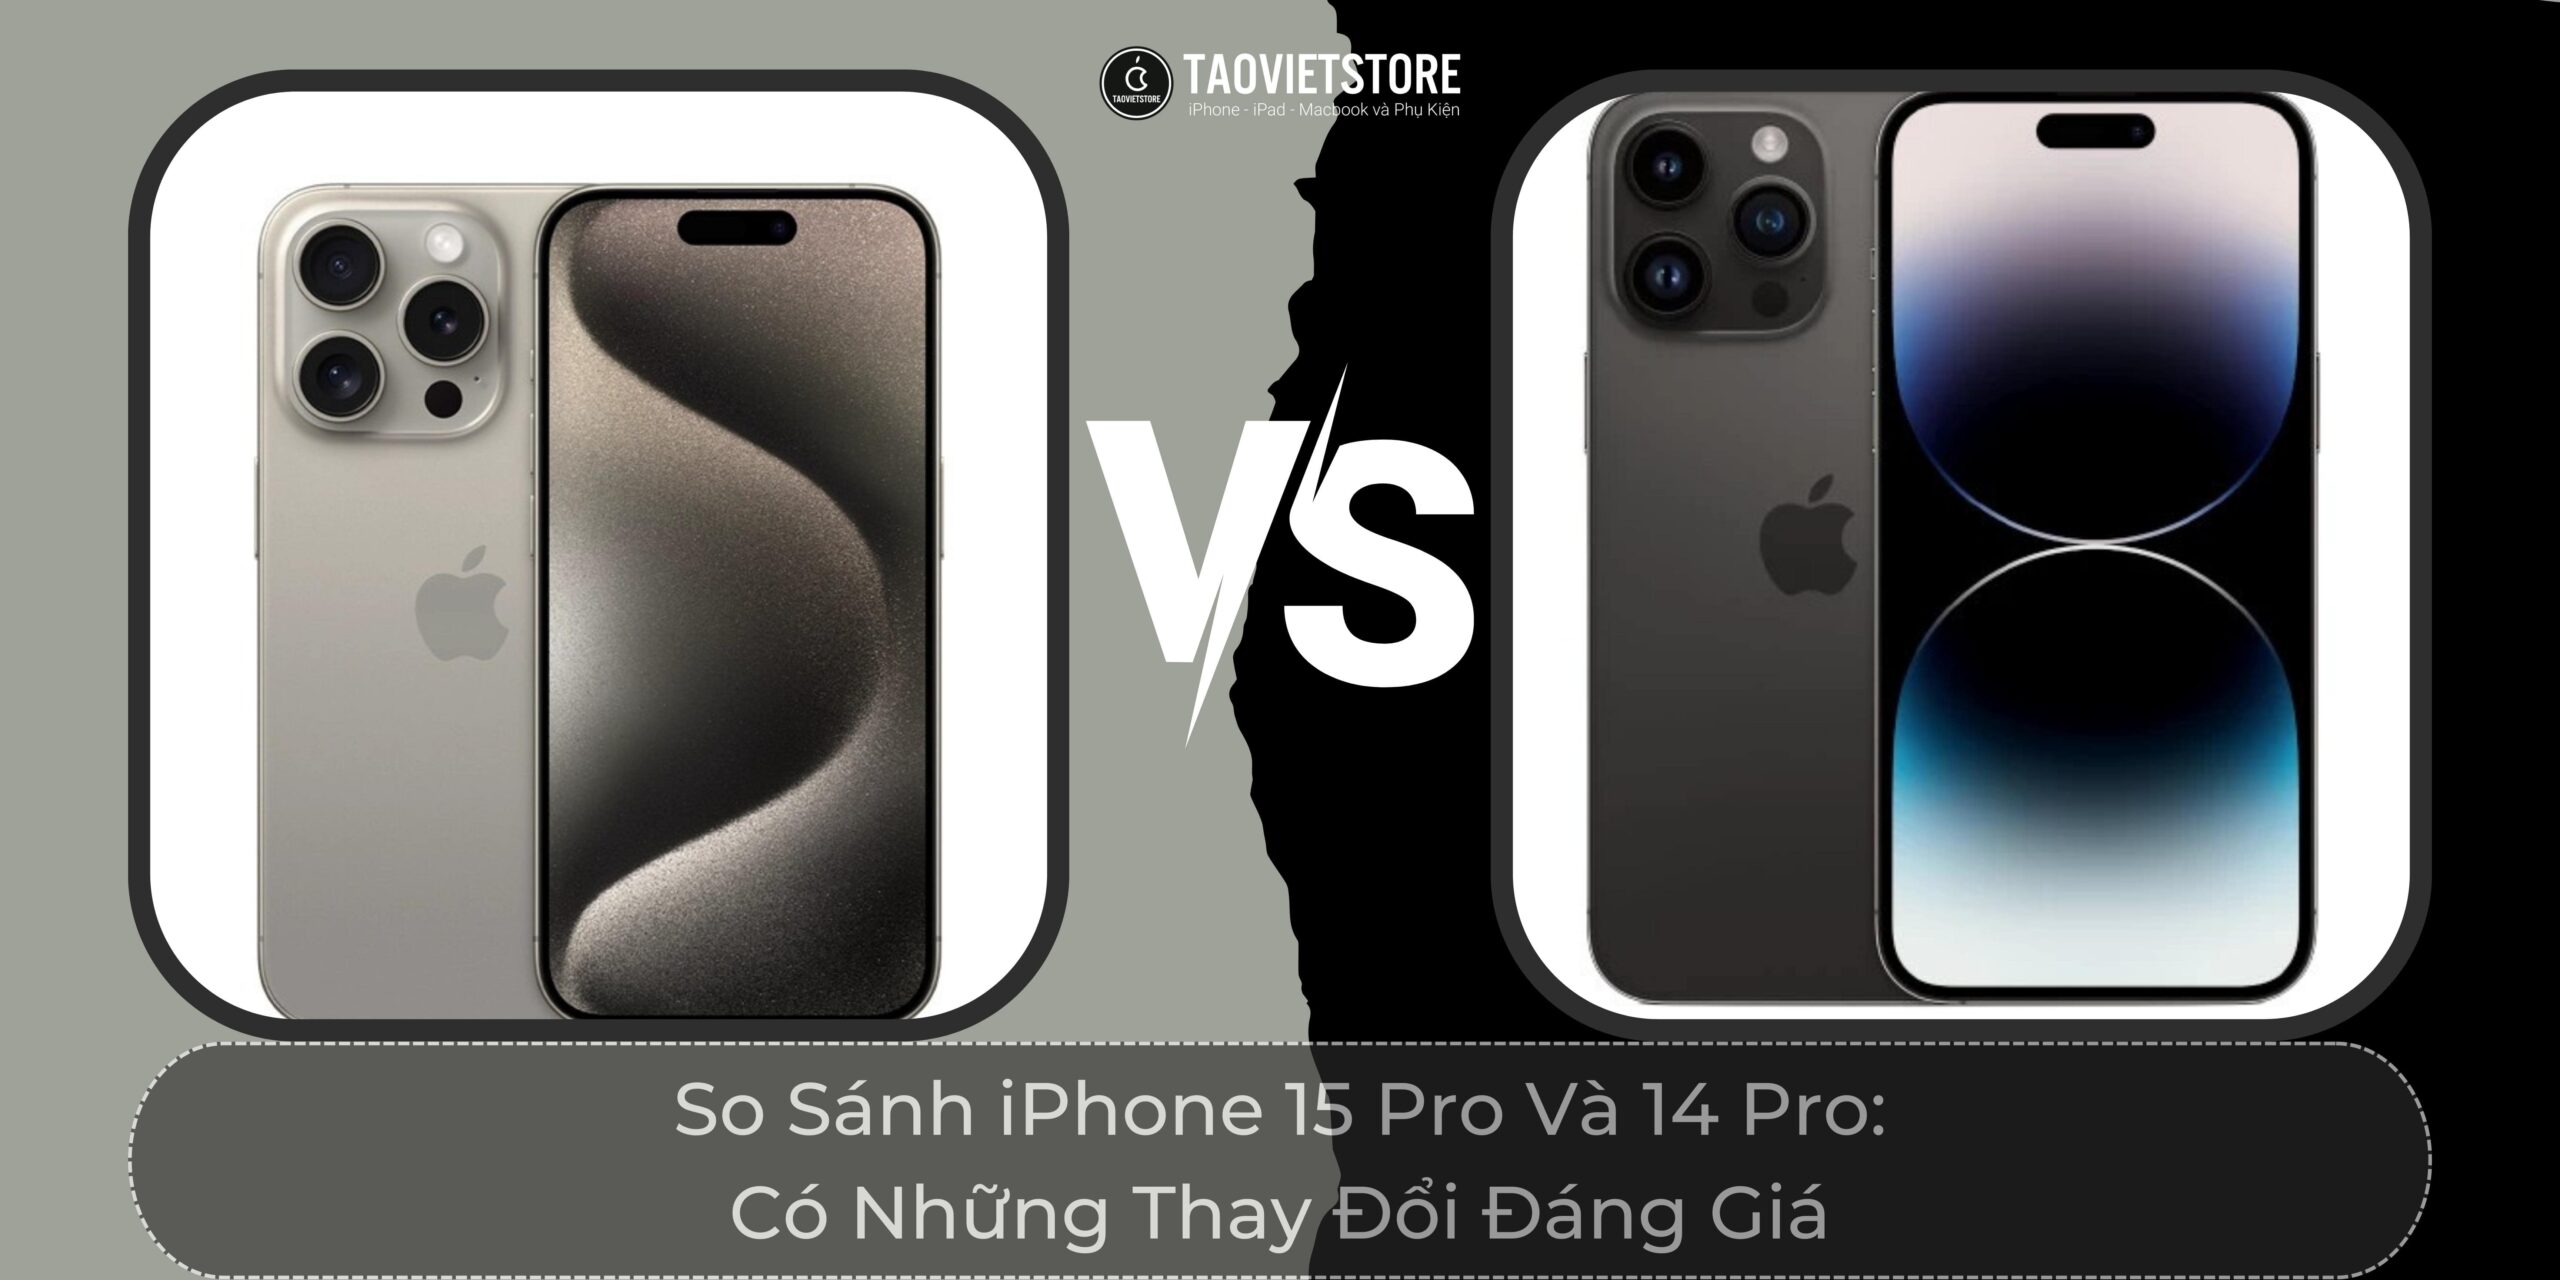 So Sánh iPhone 15 Pro Và 14 Pro: Có Những Thay Đổi Đáng Giá